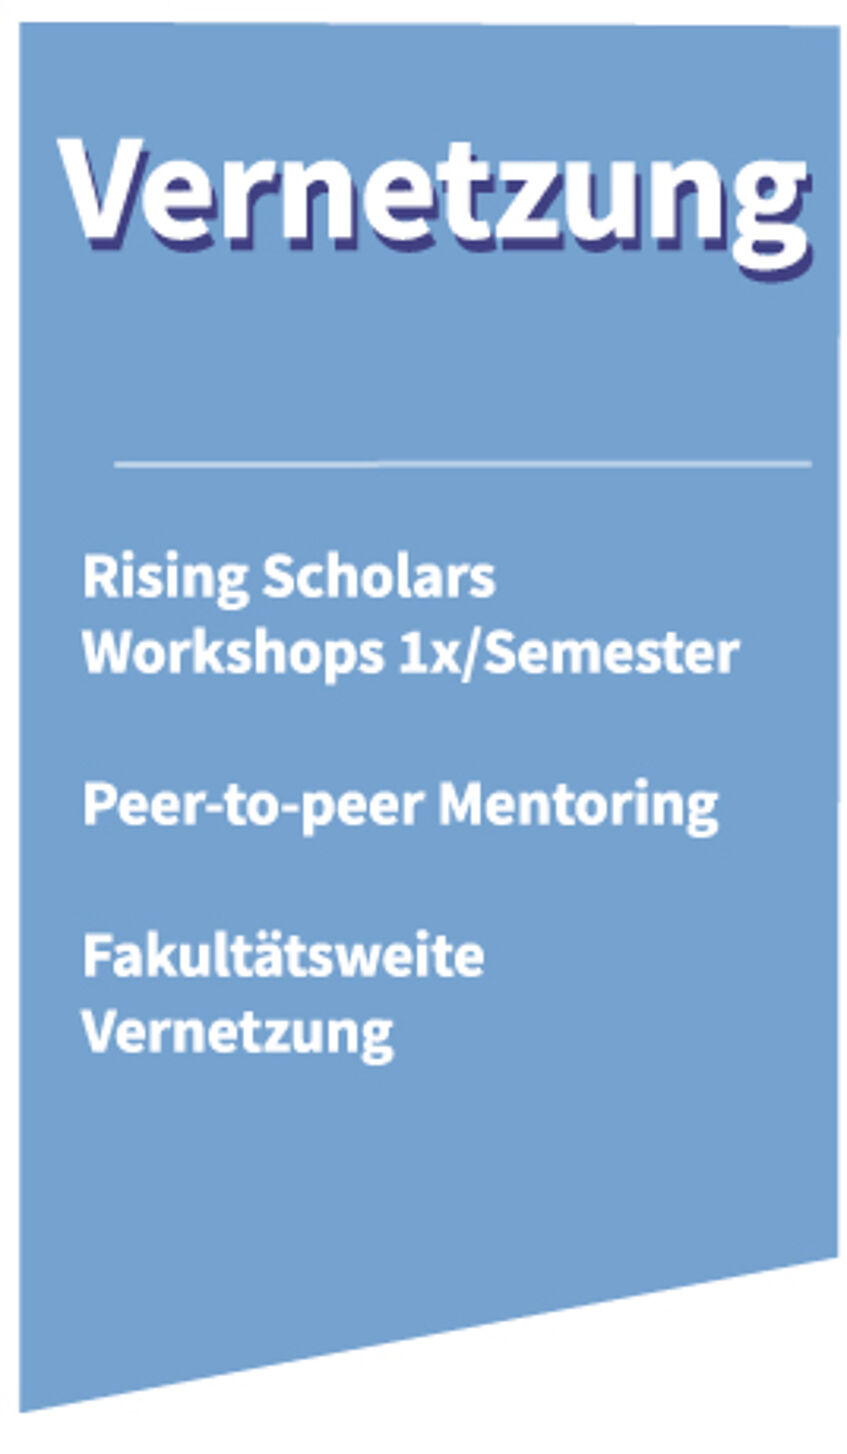 Säulen-Logo der Vernetzung von Rising Scholars